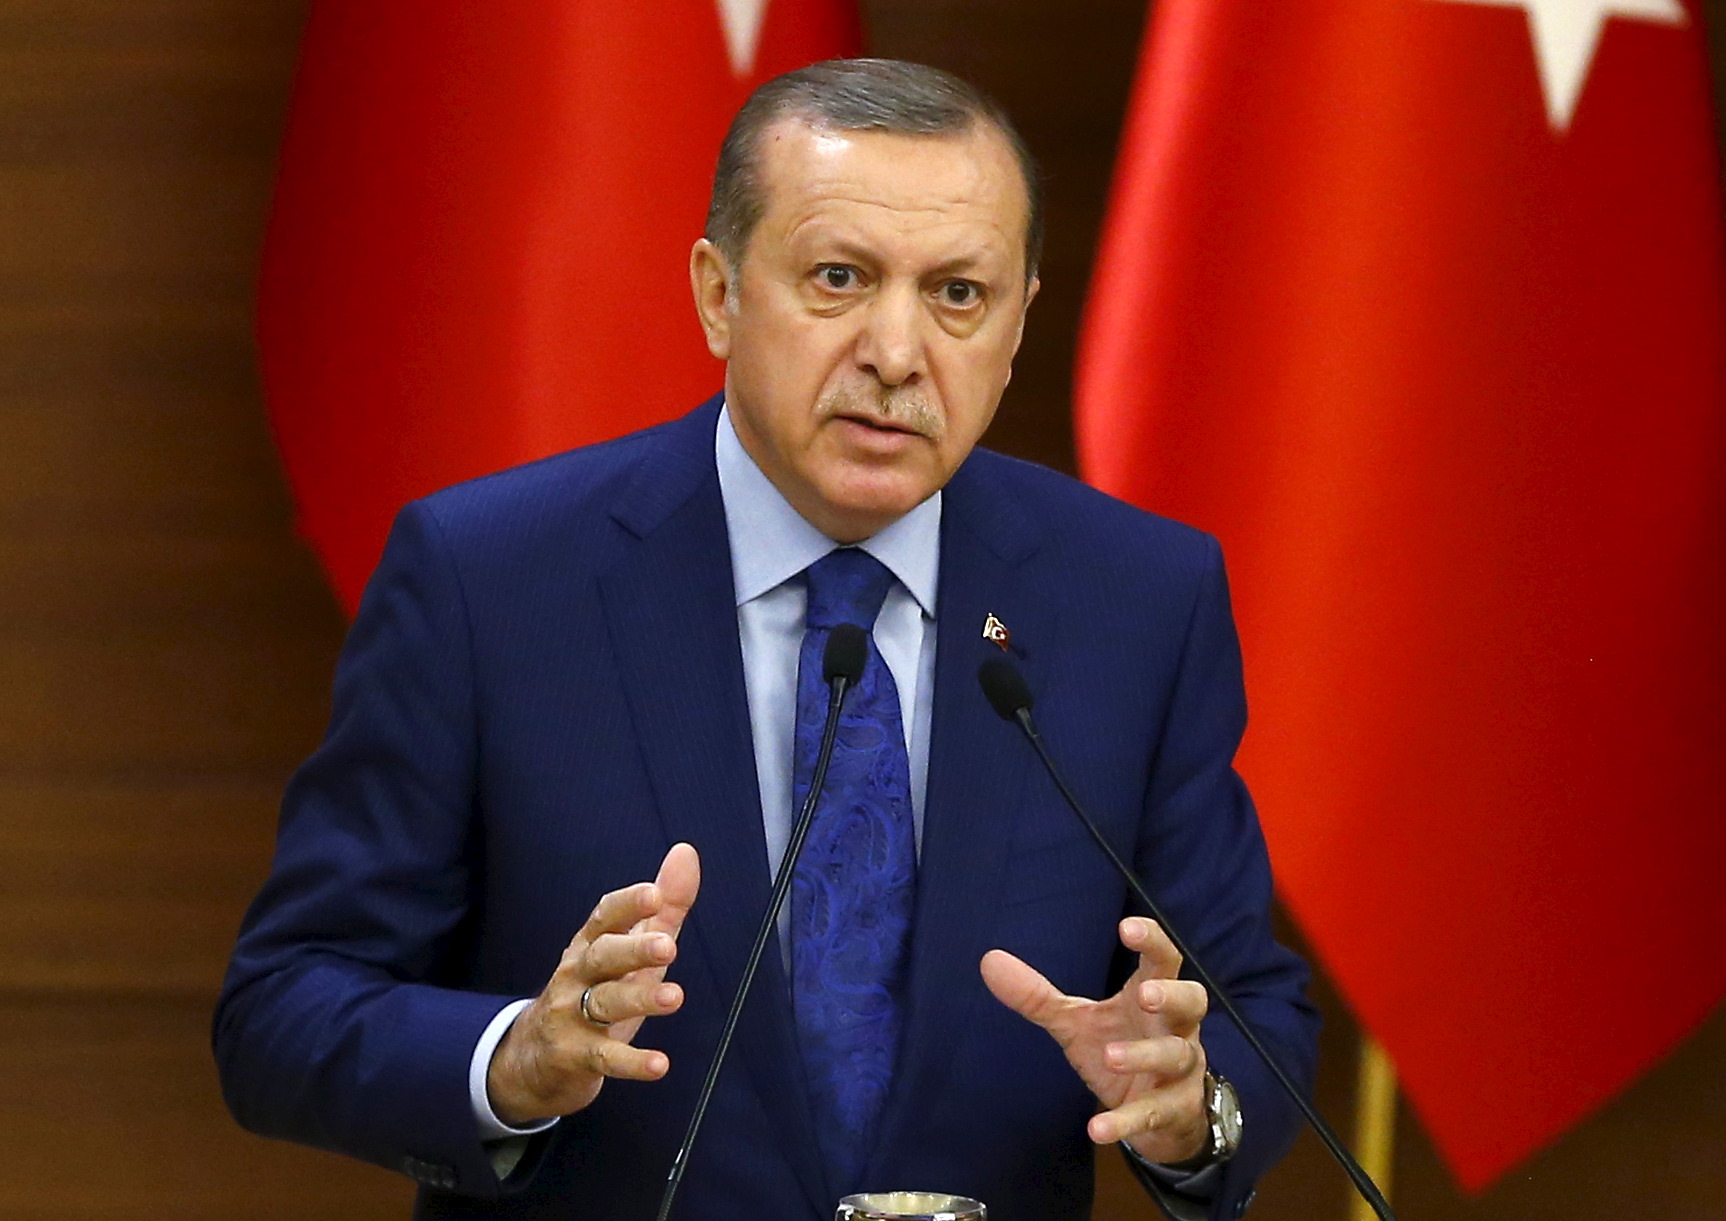 Էրդողան. Թուրքիան ու Իրանը համատեղ գործողություններ են սկսում տարածաշրջանում